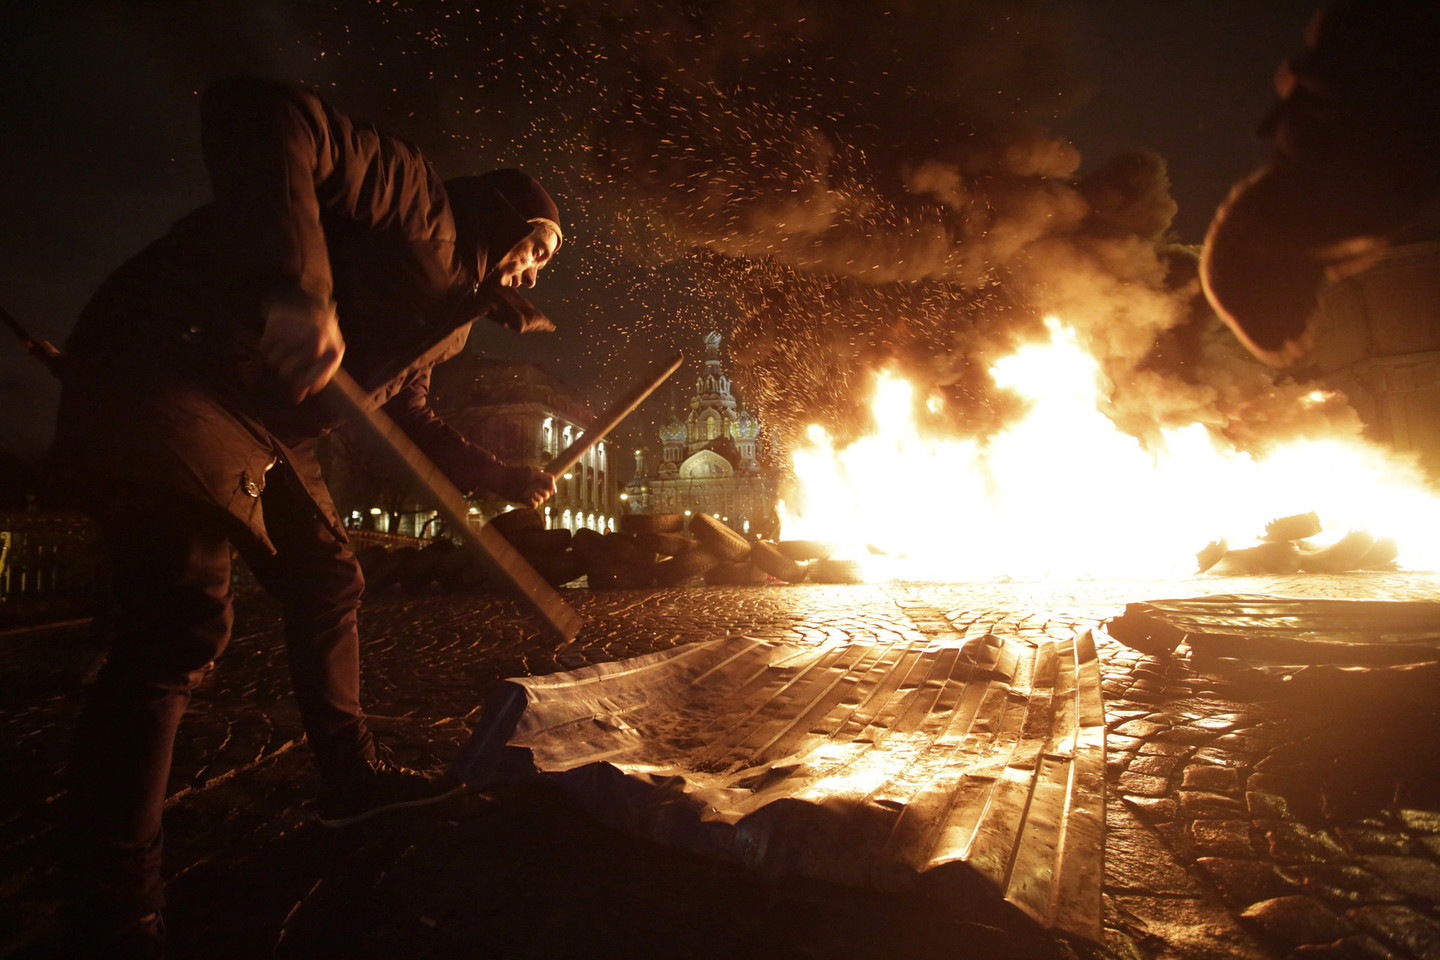 P.Pavlenskis būgnijo lazdomis performanse „Laisvė“ Sankt Peterburge, solidarizuodamasis su Maidano kovotojais.<br>Reuters nuotr.